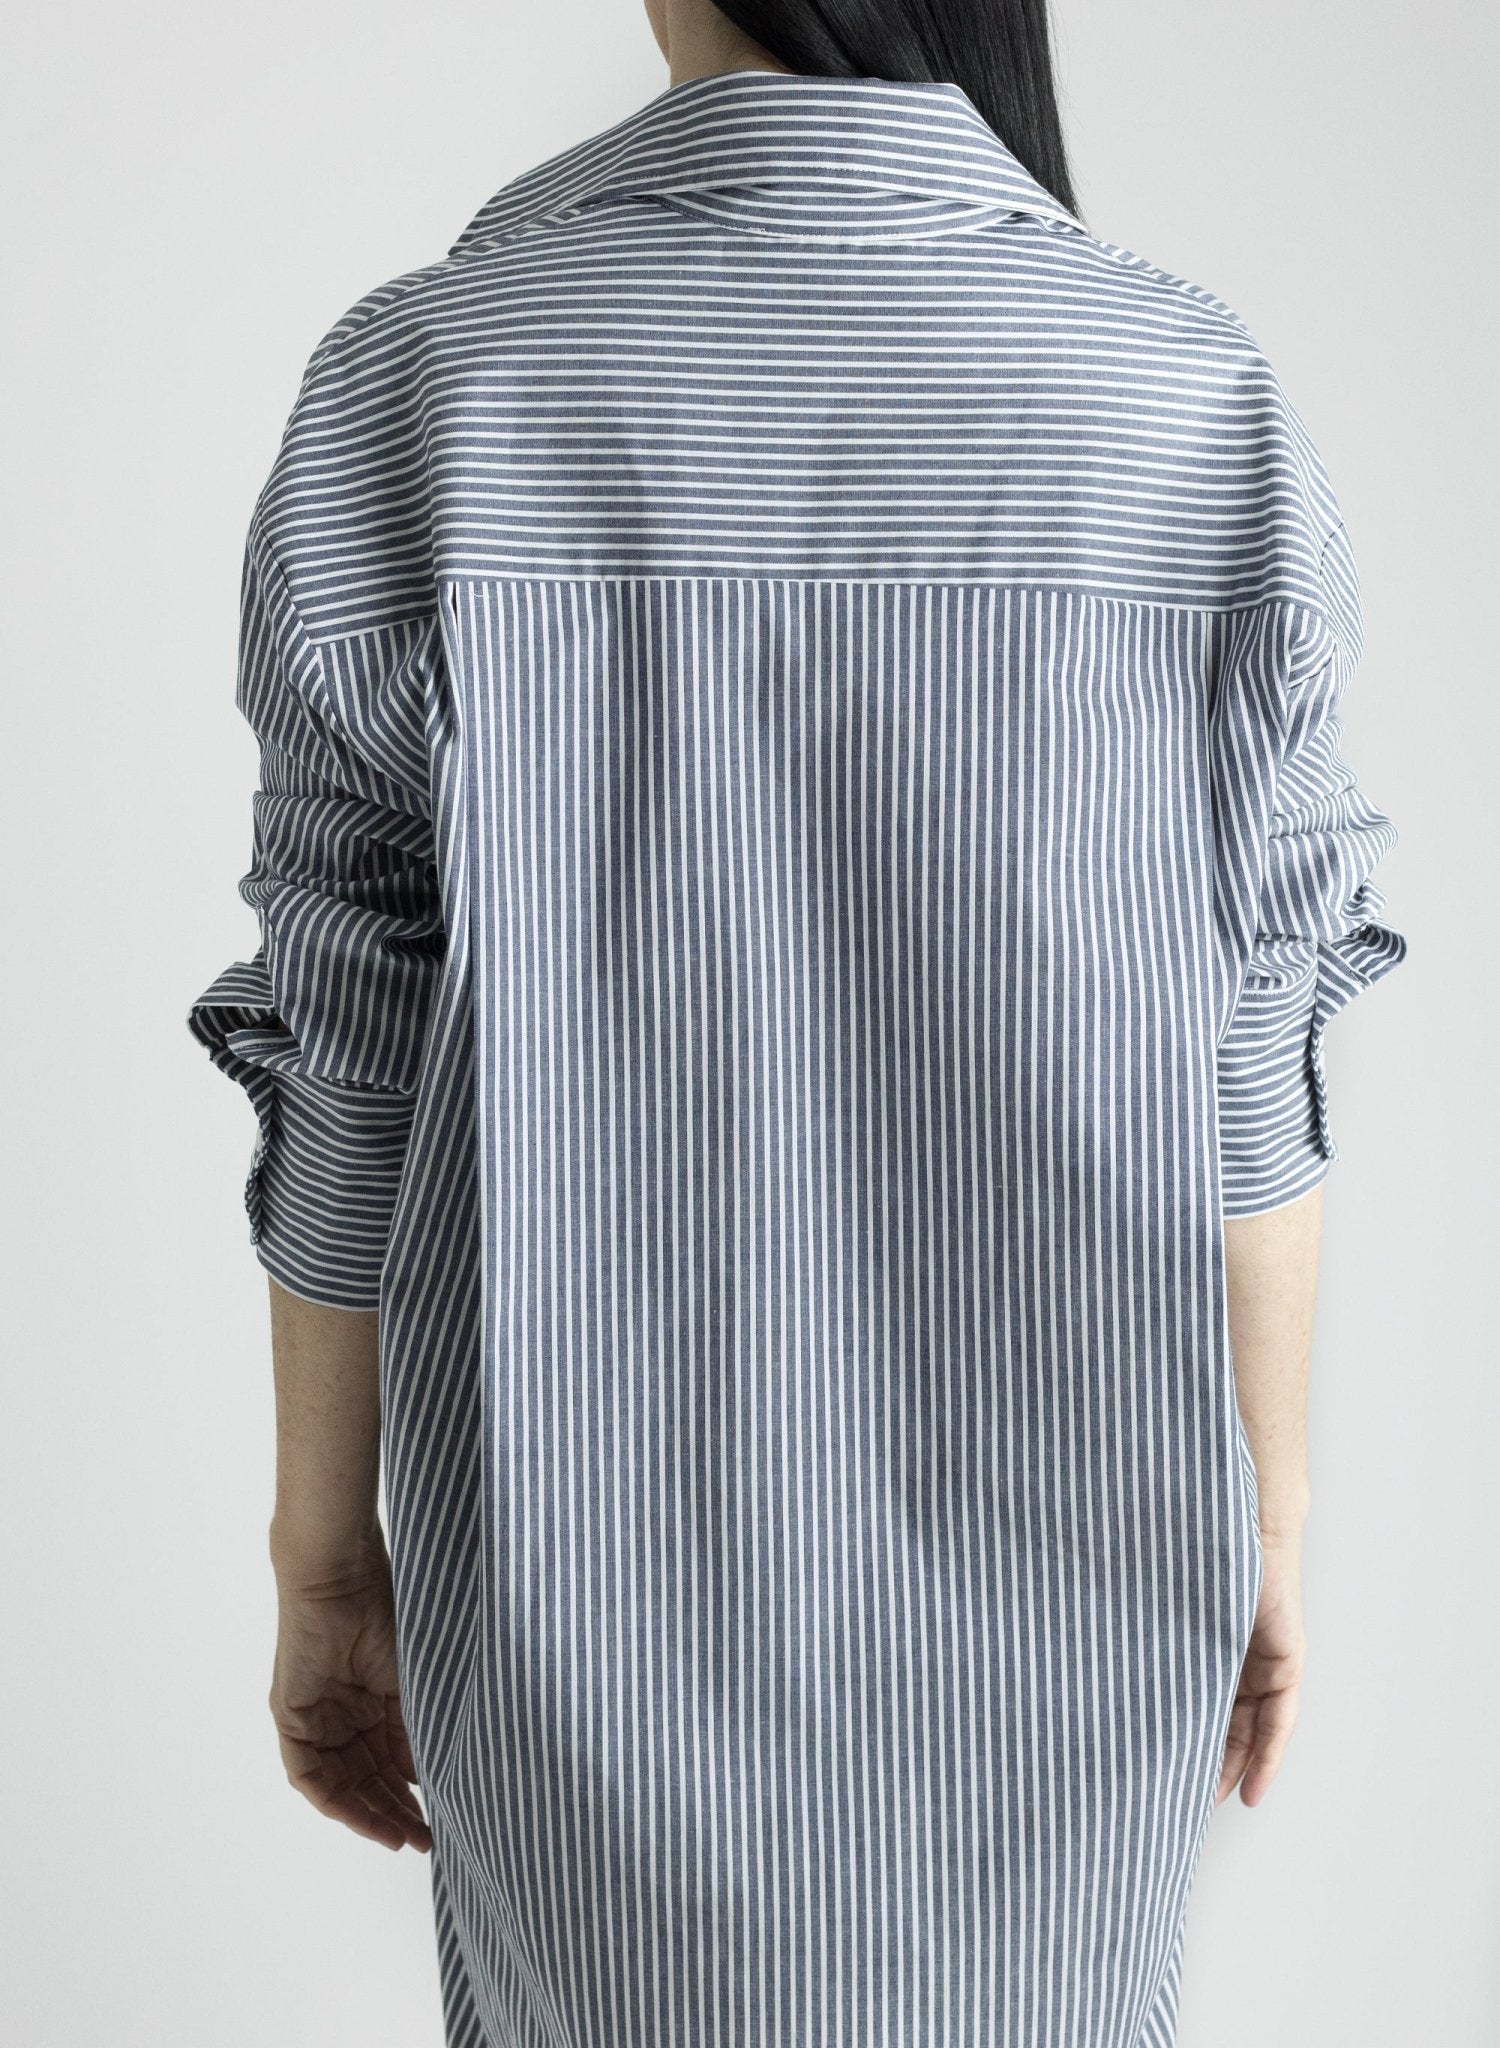 Boyfriend Shirt Dress - Railroad Stripe - Meg